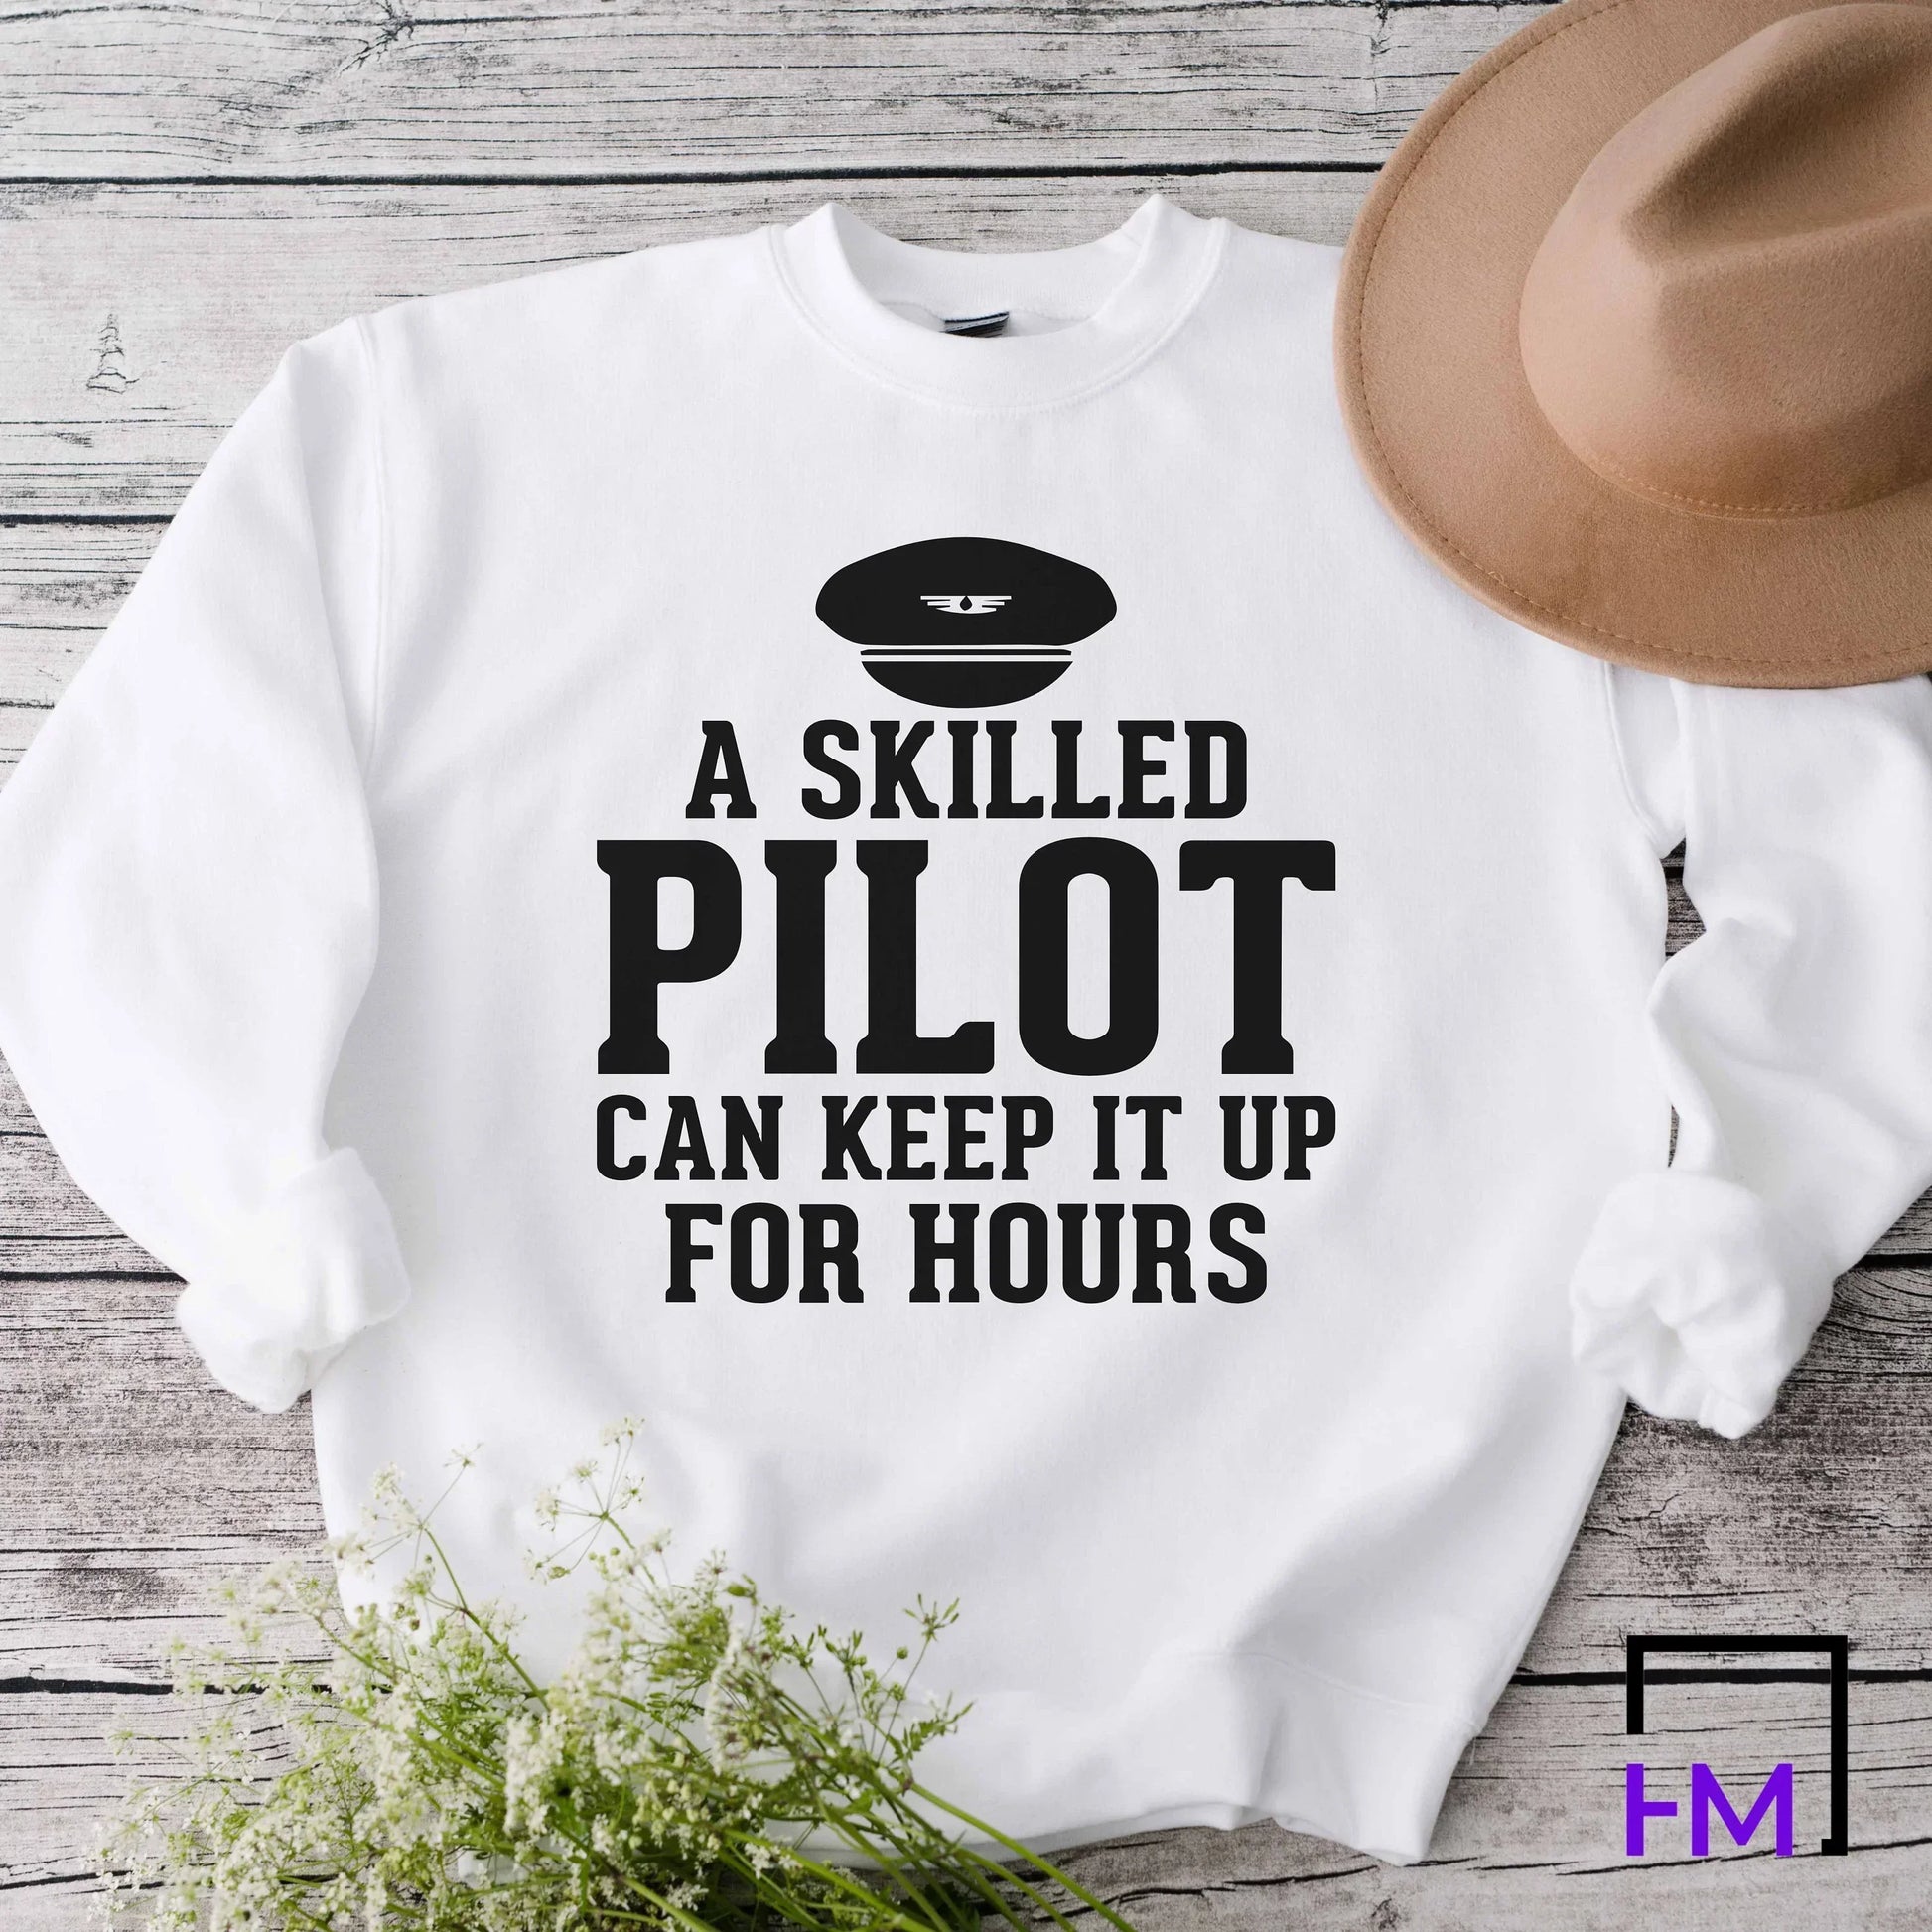 Pilot Shirt, Airplane Mode Shirt, Aviation Graduate Student, New Pilot Gift for Traveler, Adventurer Gift, Frequent Flyer Vacation Shirt HMDesignStudioUS